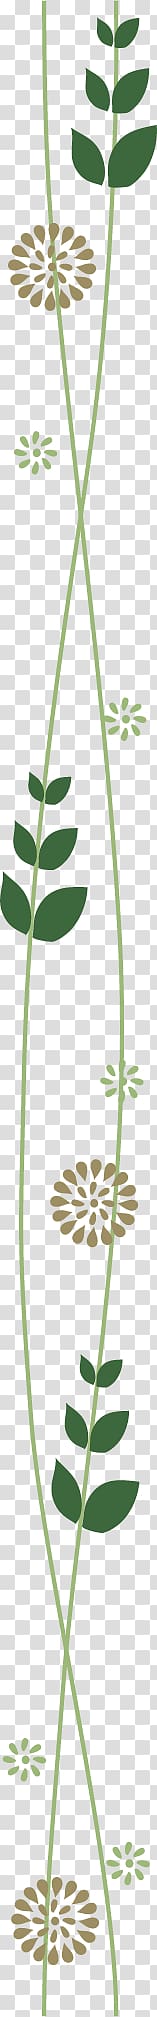 green and brown floral illustration, Grasses Plant stem Leaf Green Flower, Green segmentation line transparent background PNG clipart